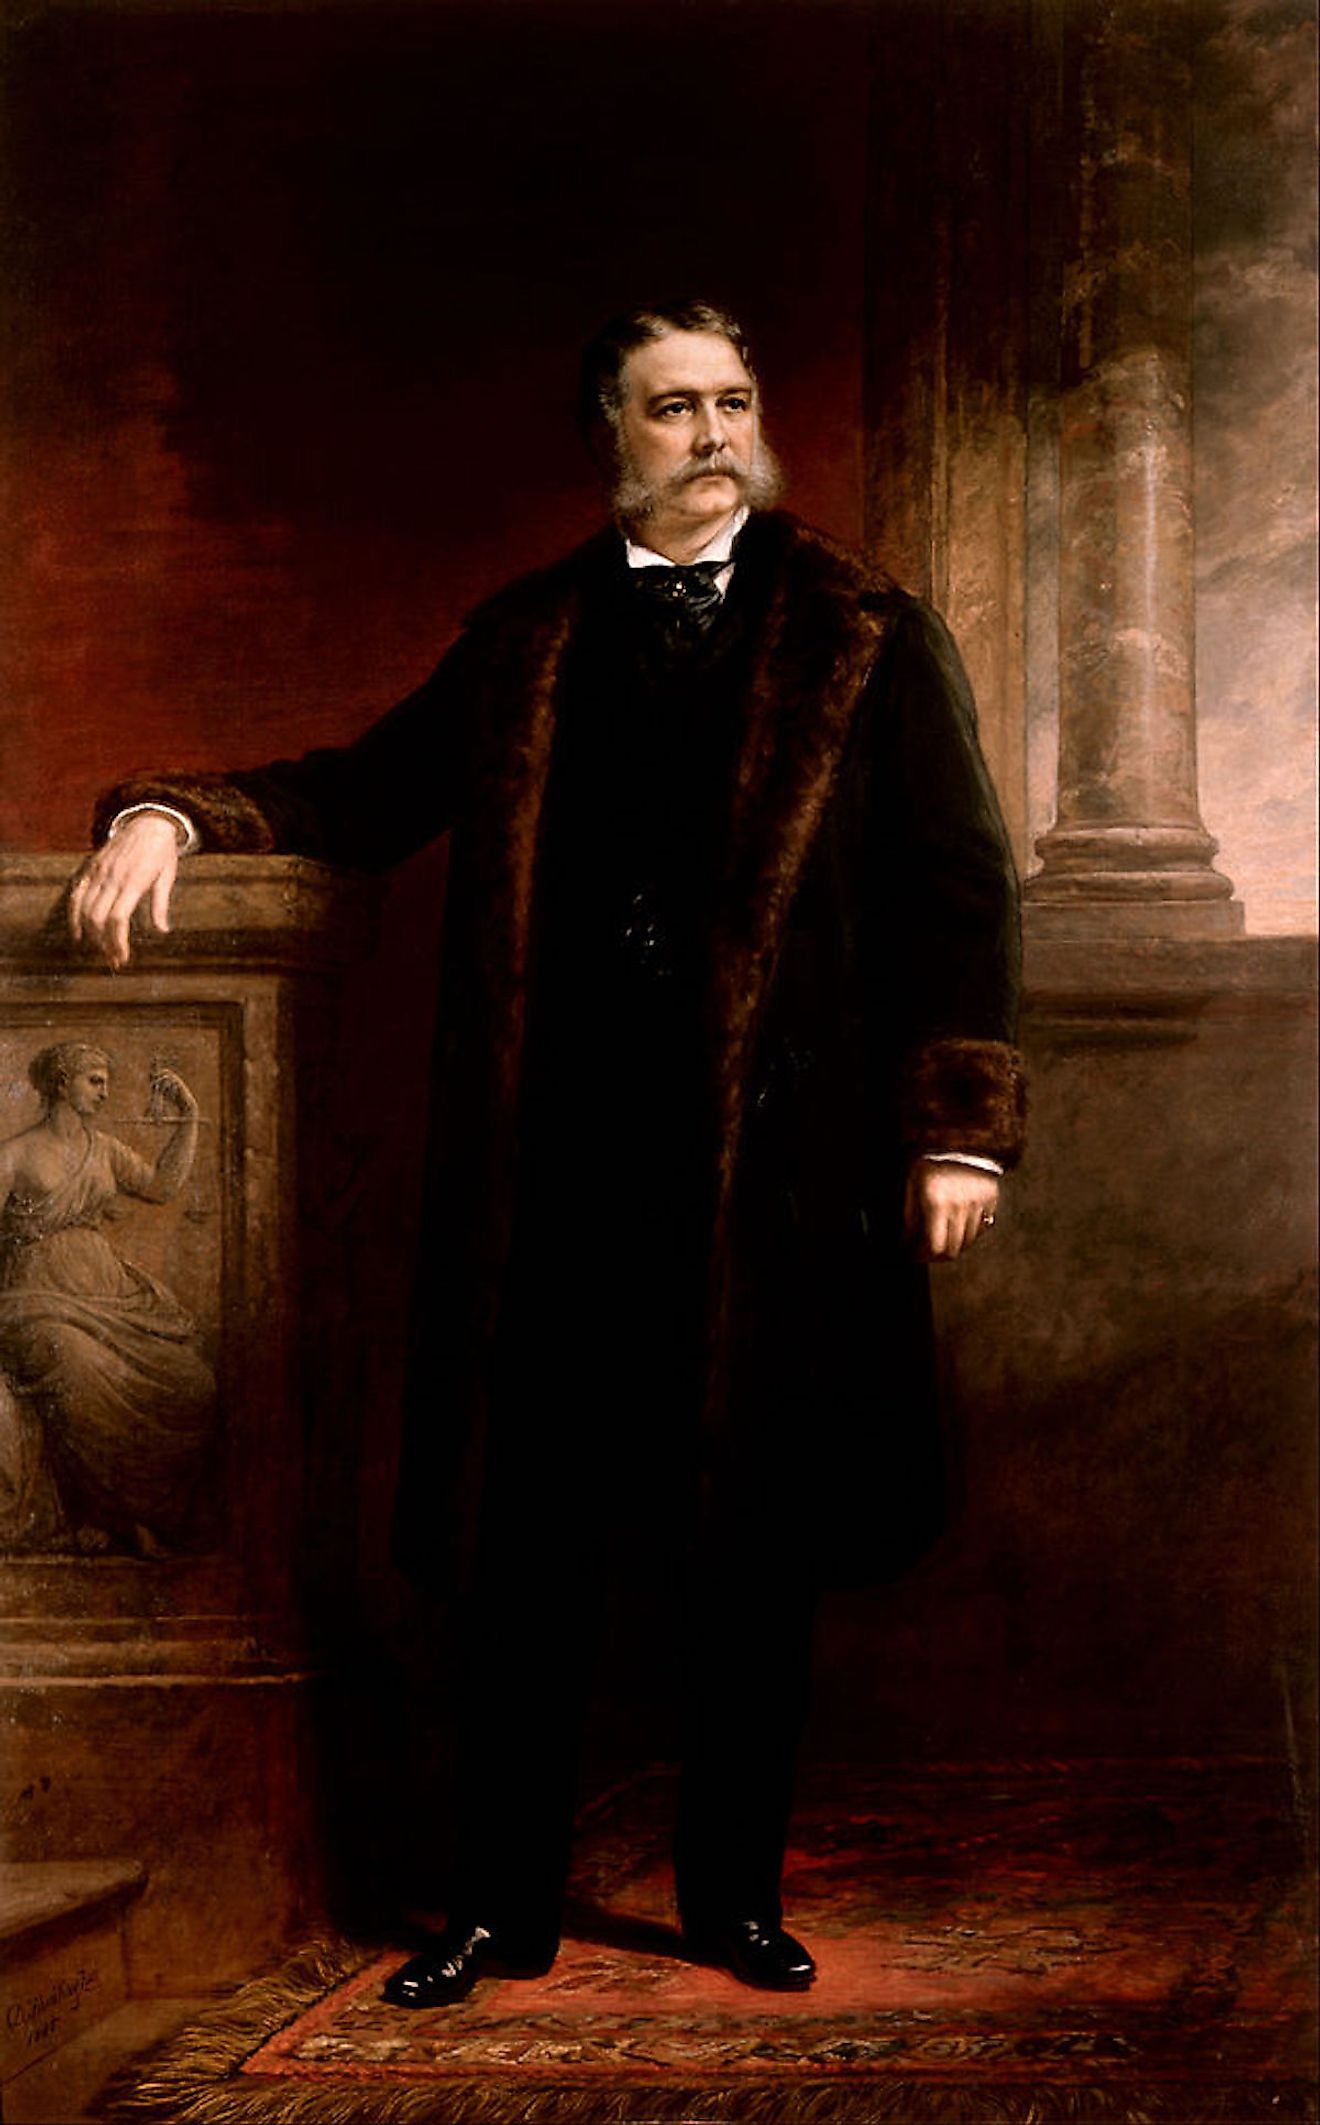 Official White House portrait of Chester A. Arthur (Daniel Huntington). Image credit: Daniel Huntington/Public domain